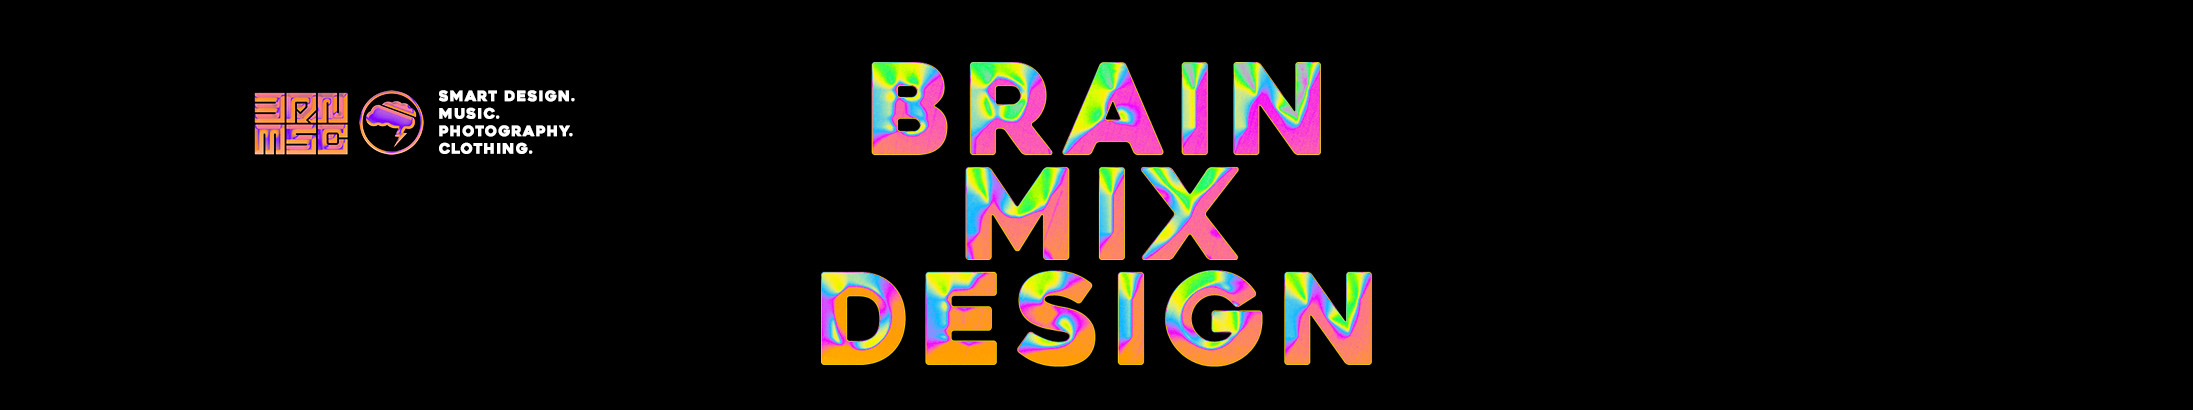 BrainMixDesign //'s profile banner